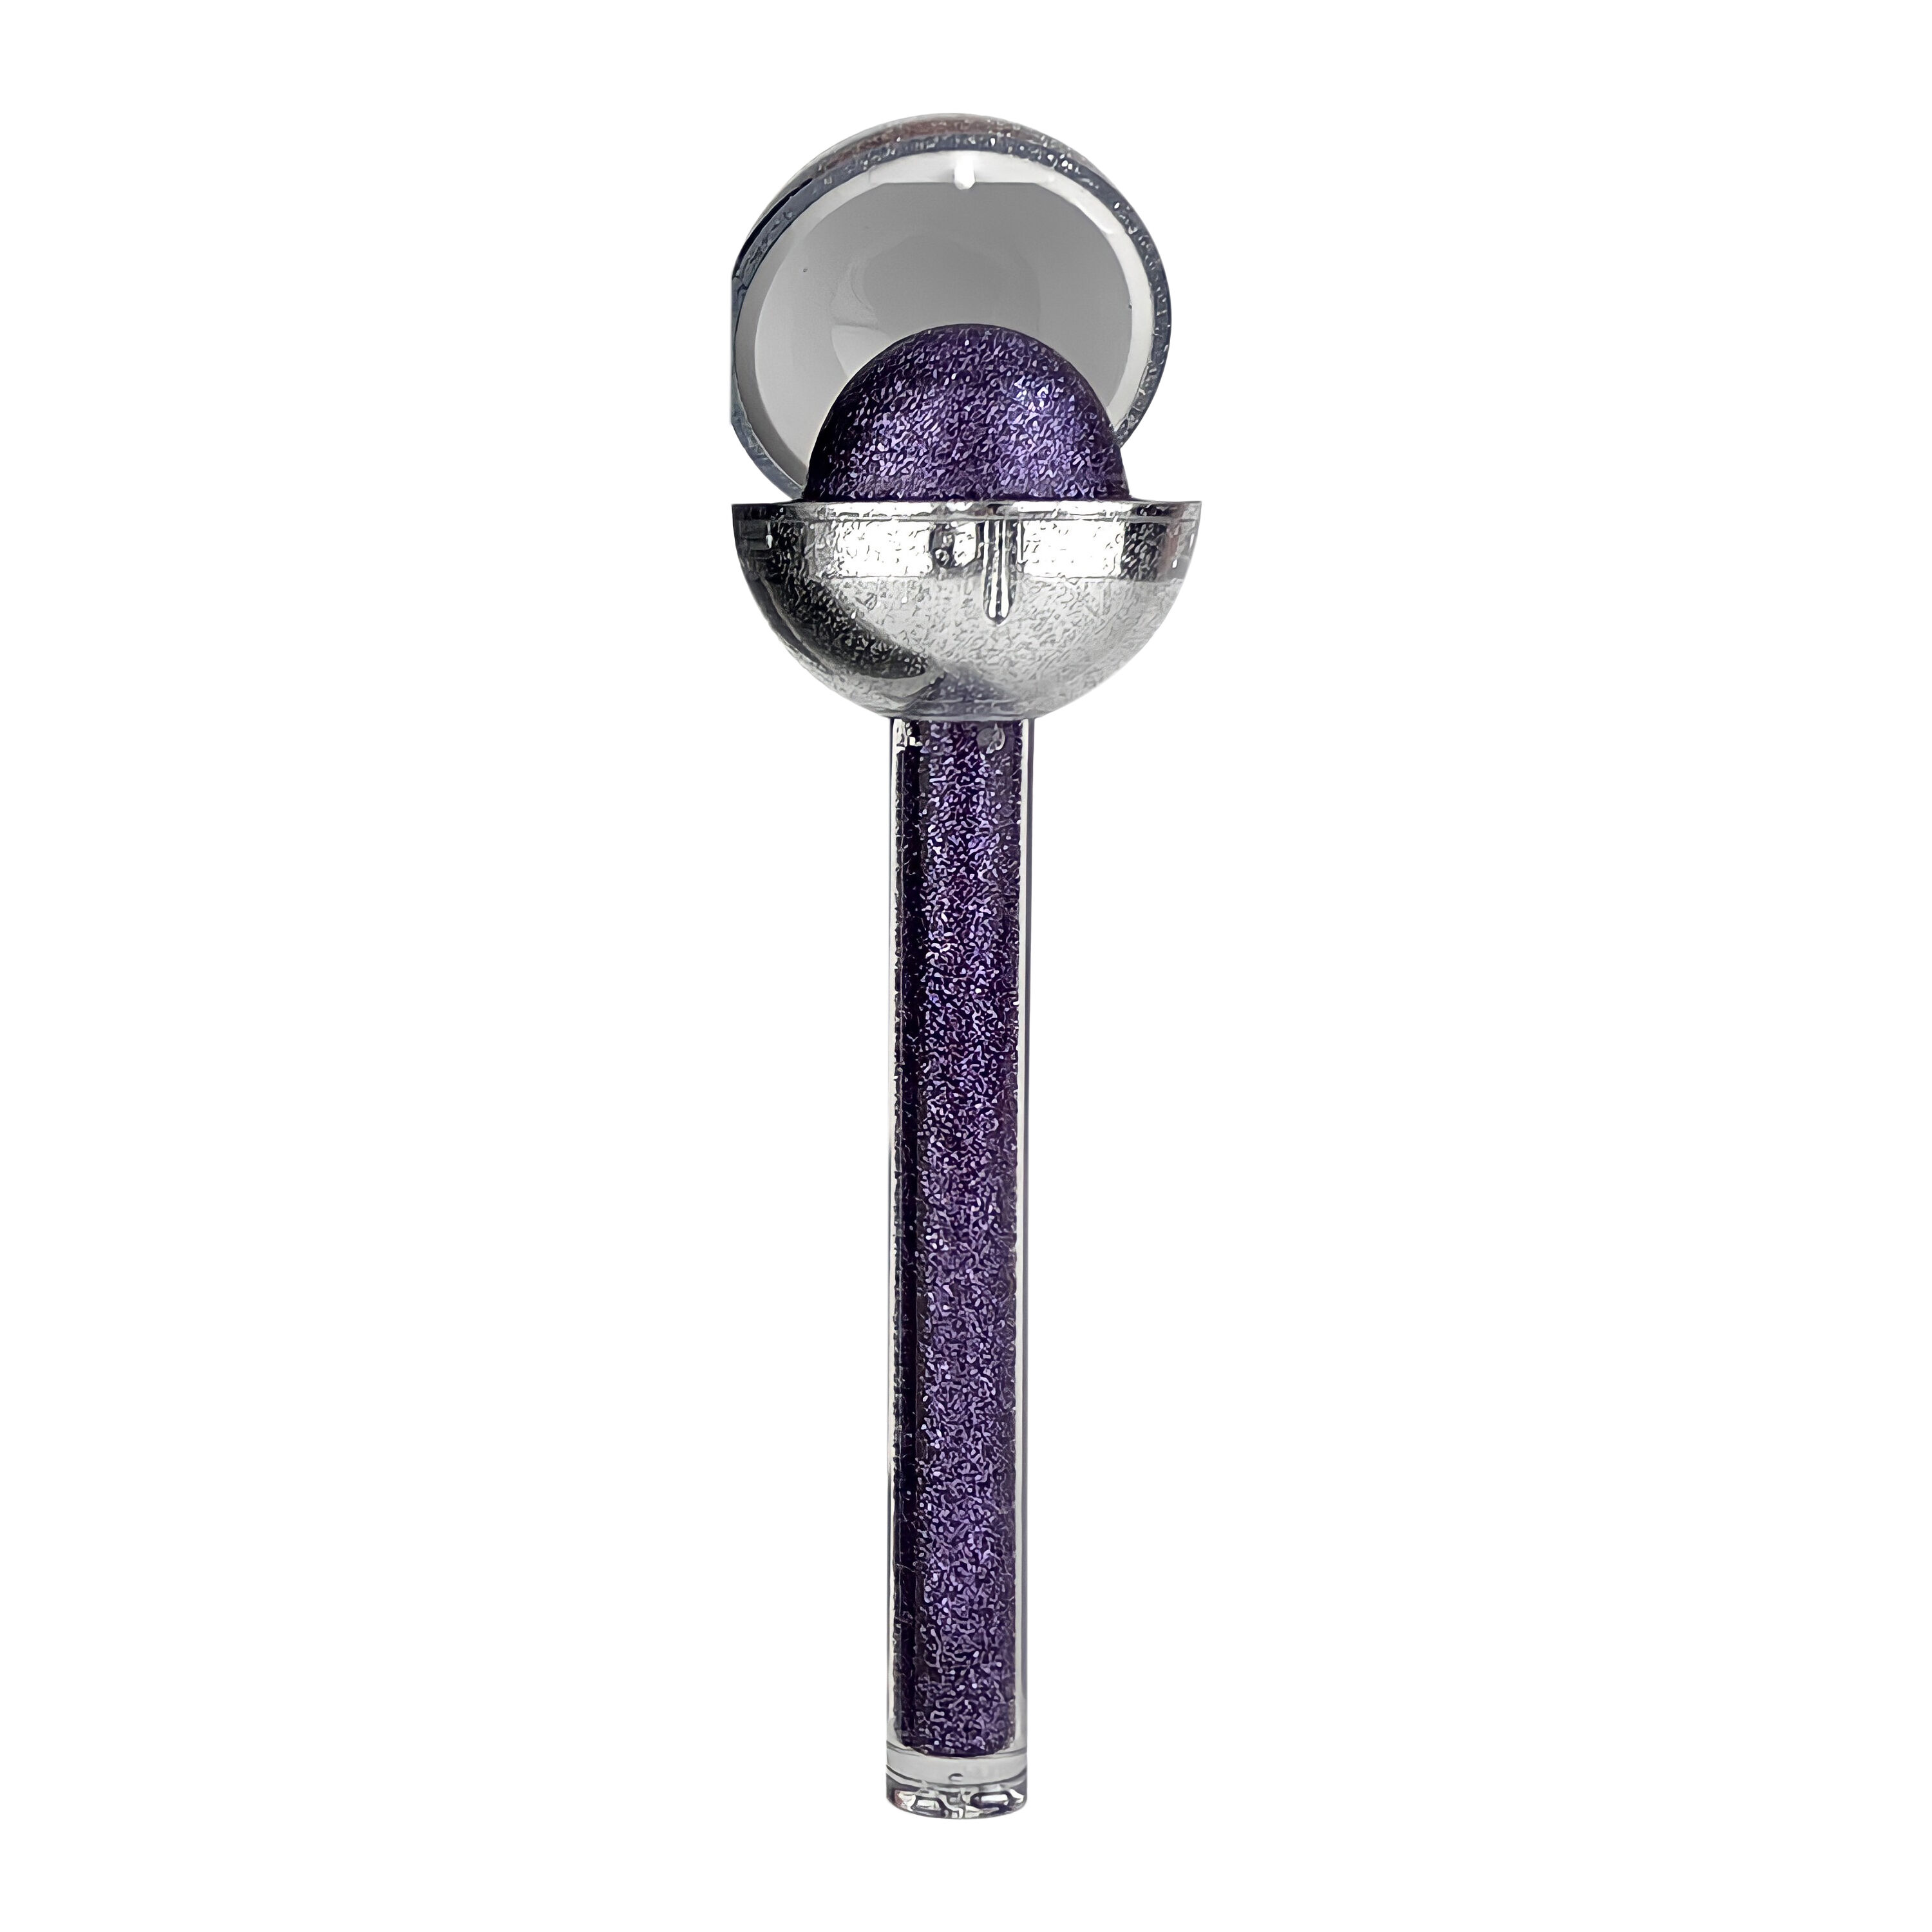 Glossy Pops Studio 54 Бальзам и блеск для губ Posh Purple, 1 шт.